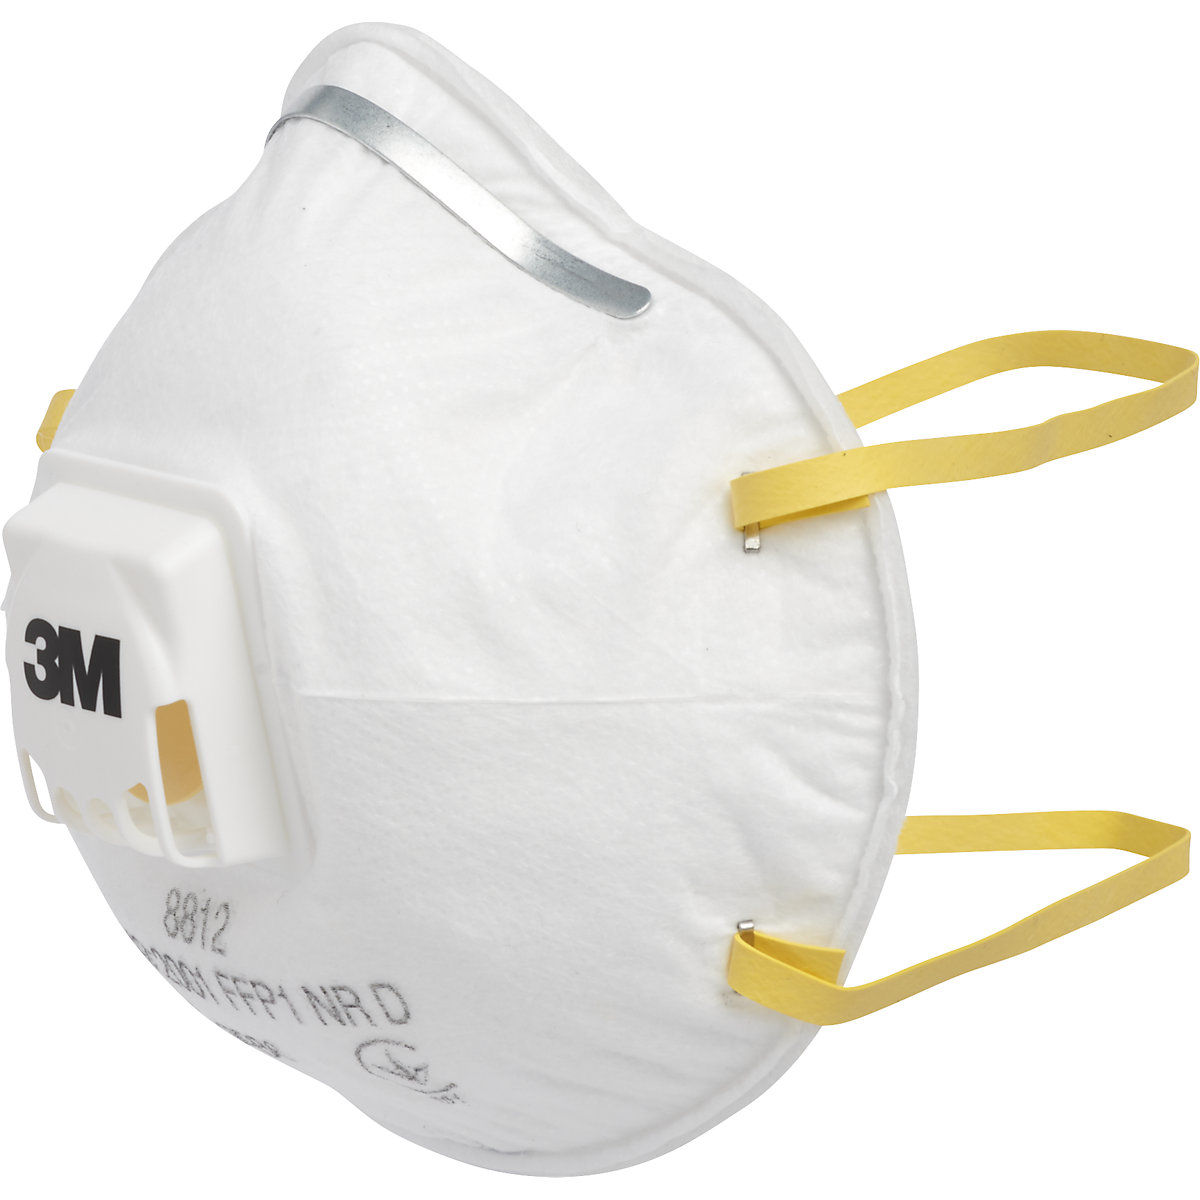 Masque de protection respiratoire 8812 FFP1 NR D avec clapet d'expiration – 3M, lot de 10, blanc, à partir de 10 lots